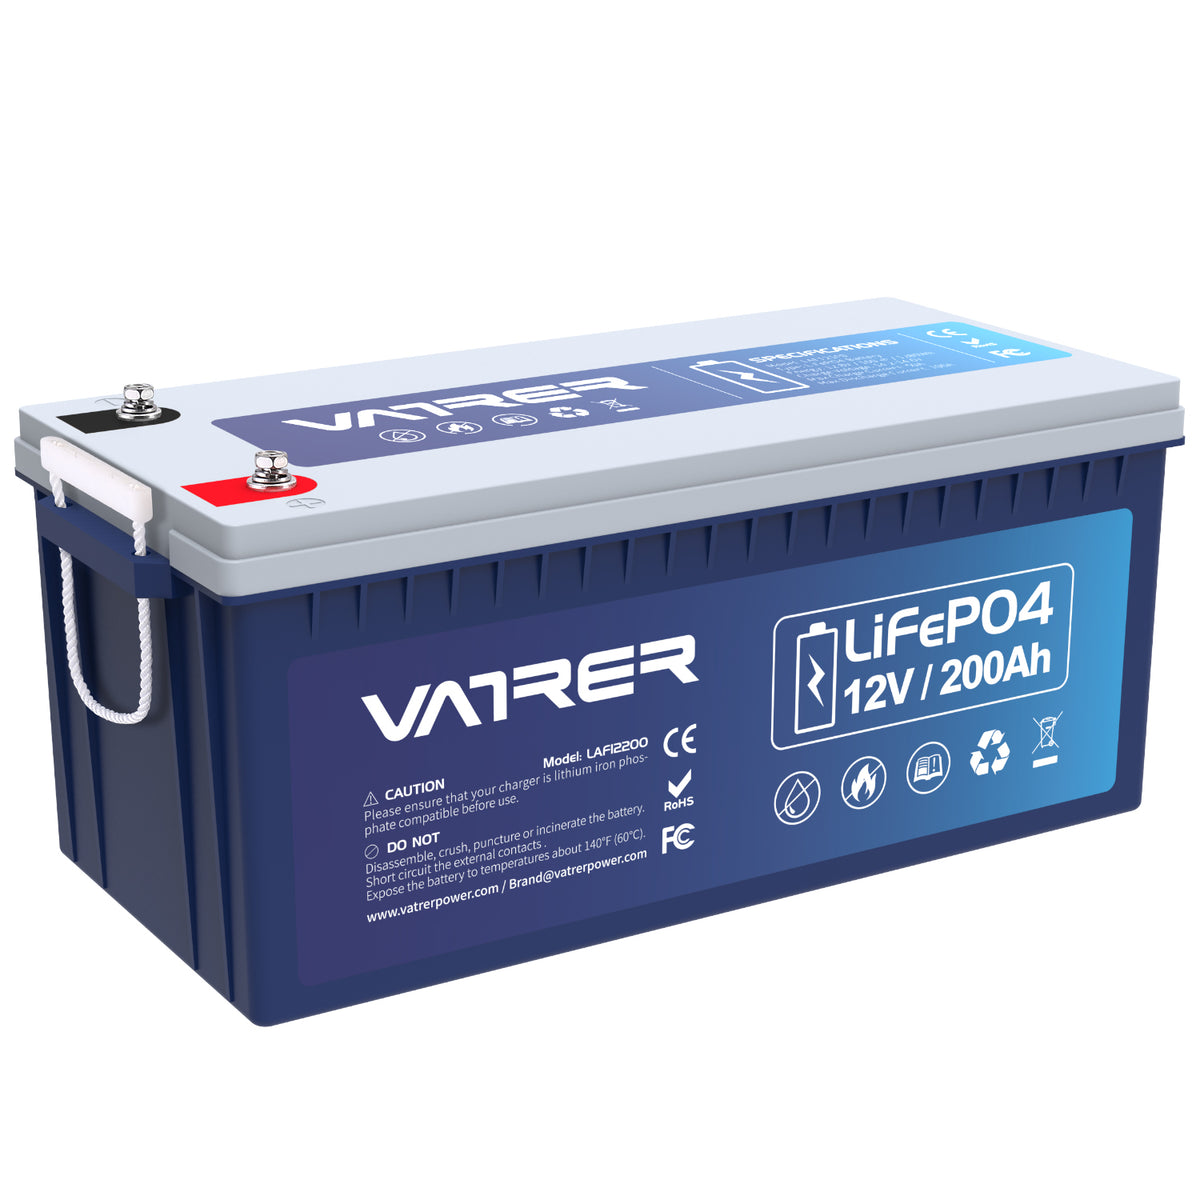 12V 200Ah más batería de litio LiFePO4, 200A BMS incorporado y corte de baja temperatura